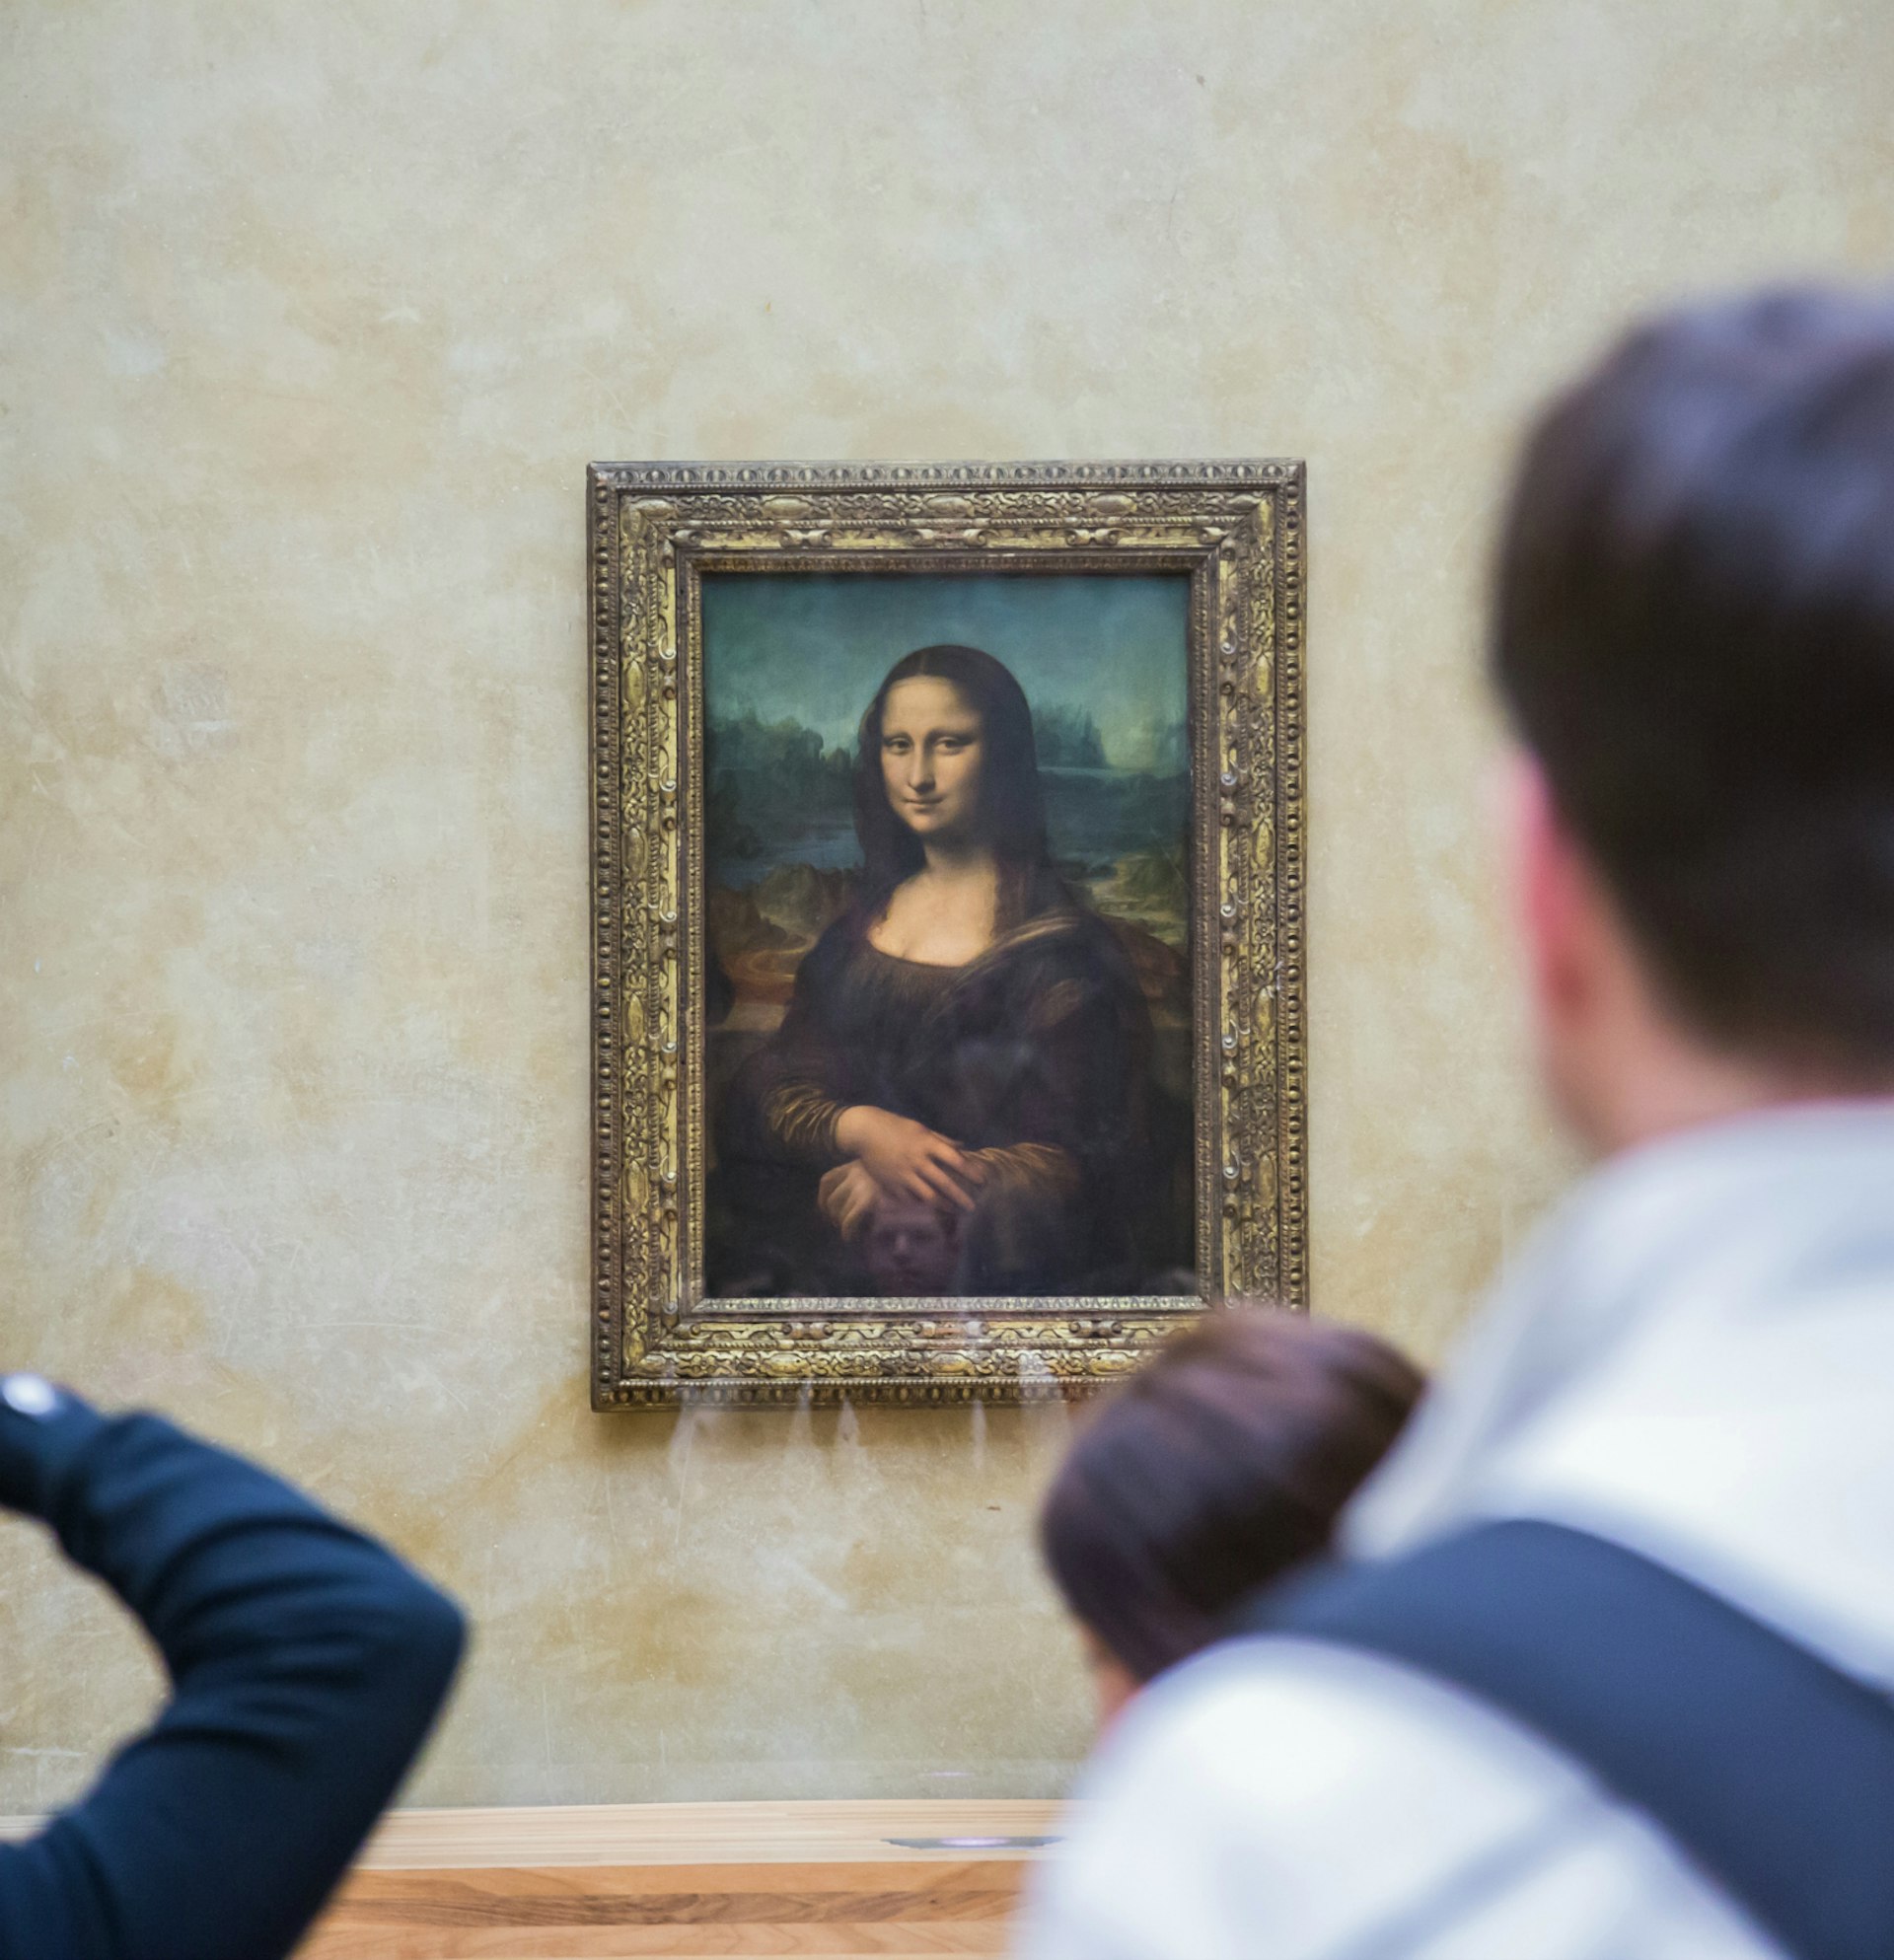 Mona Lisa by Leonardo da Vinci hangs in the Louvre